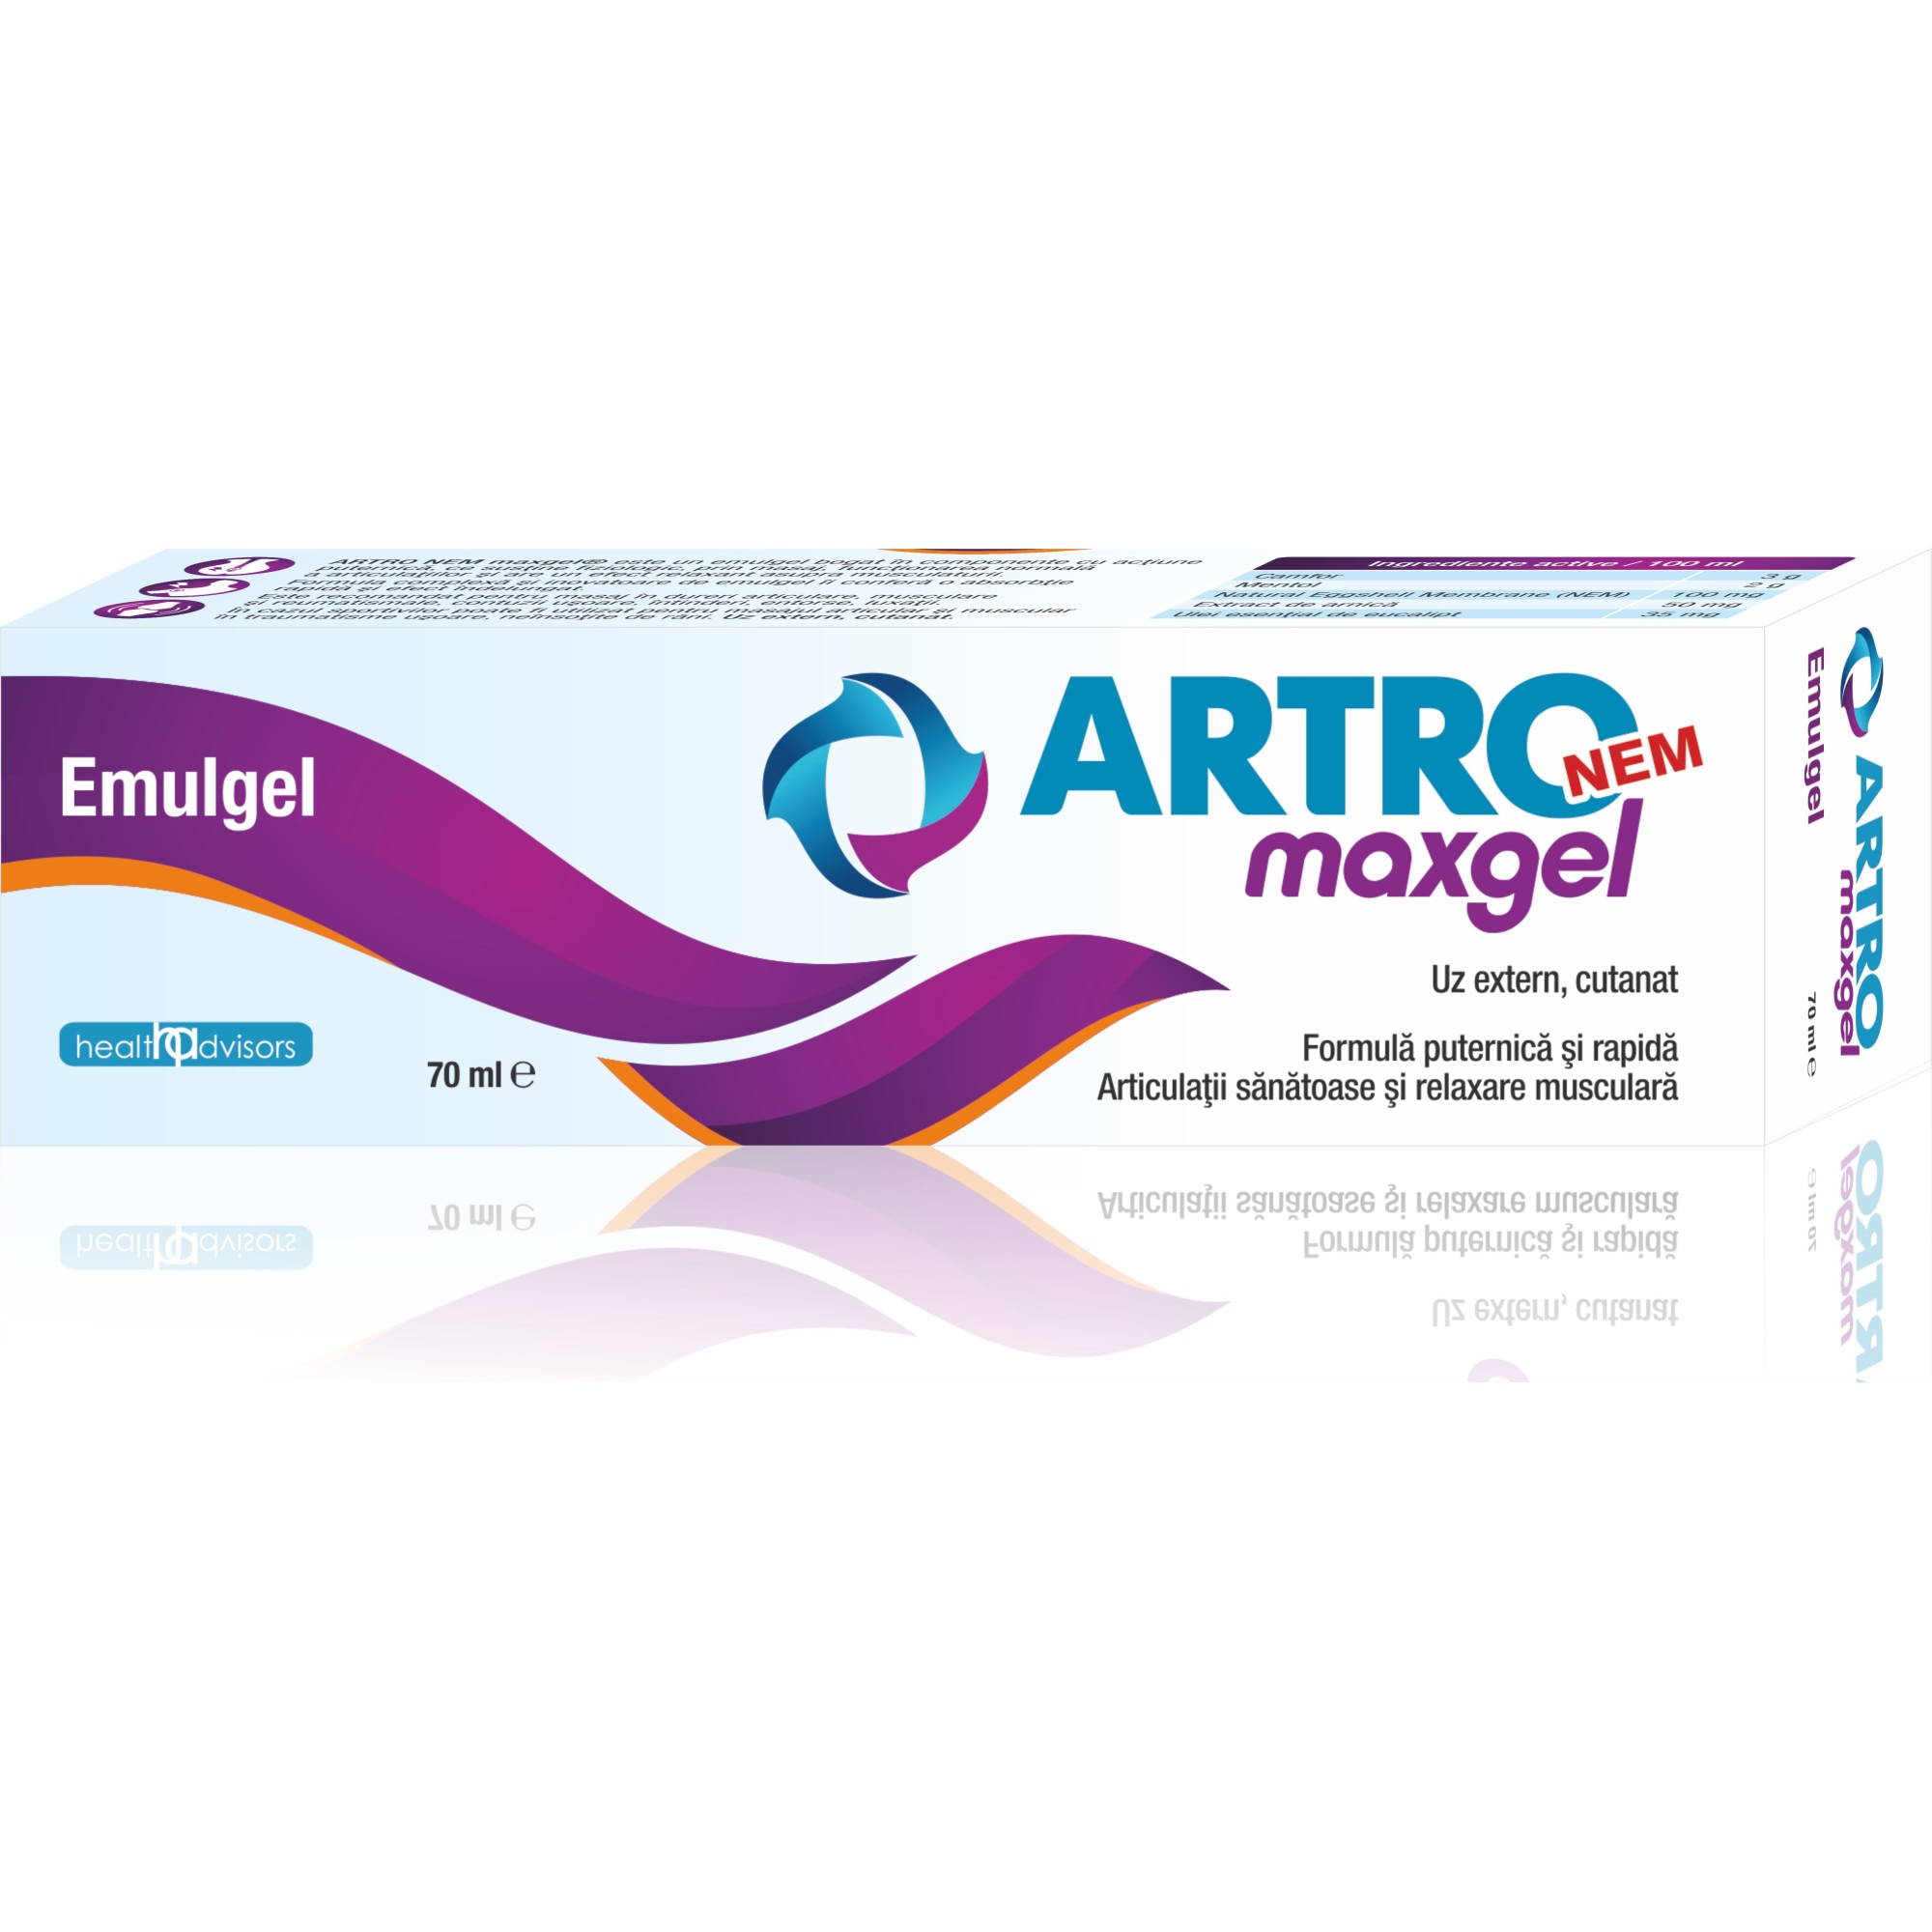 Artro Efervescent, 20 comprimate, Health Advisors